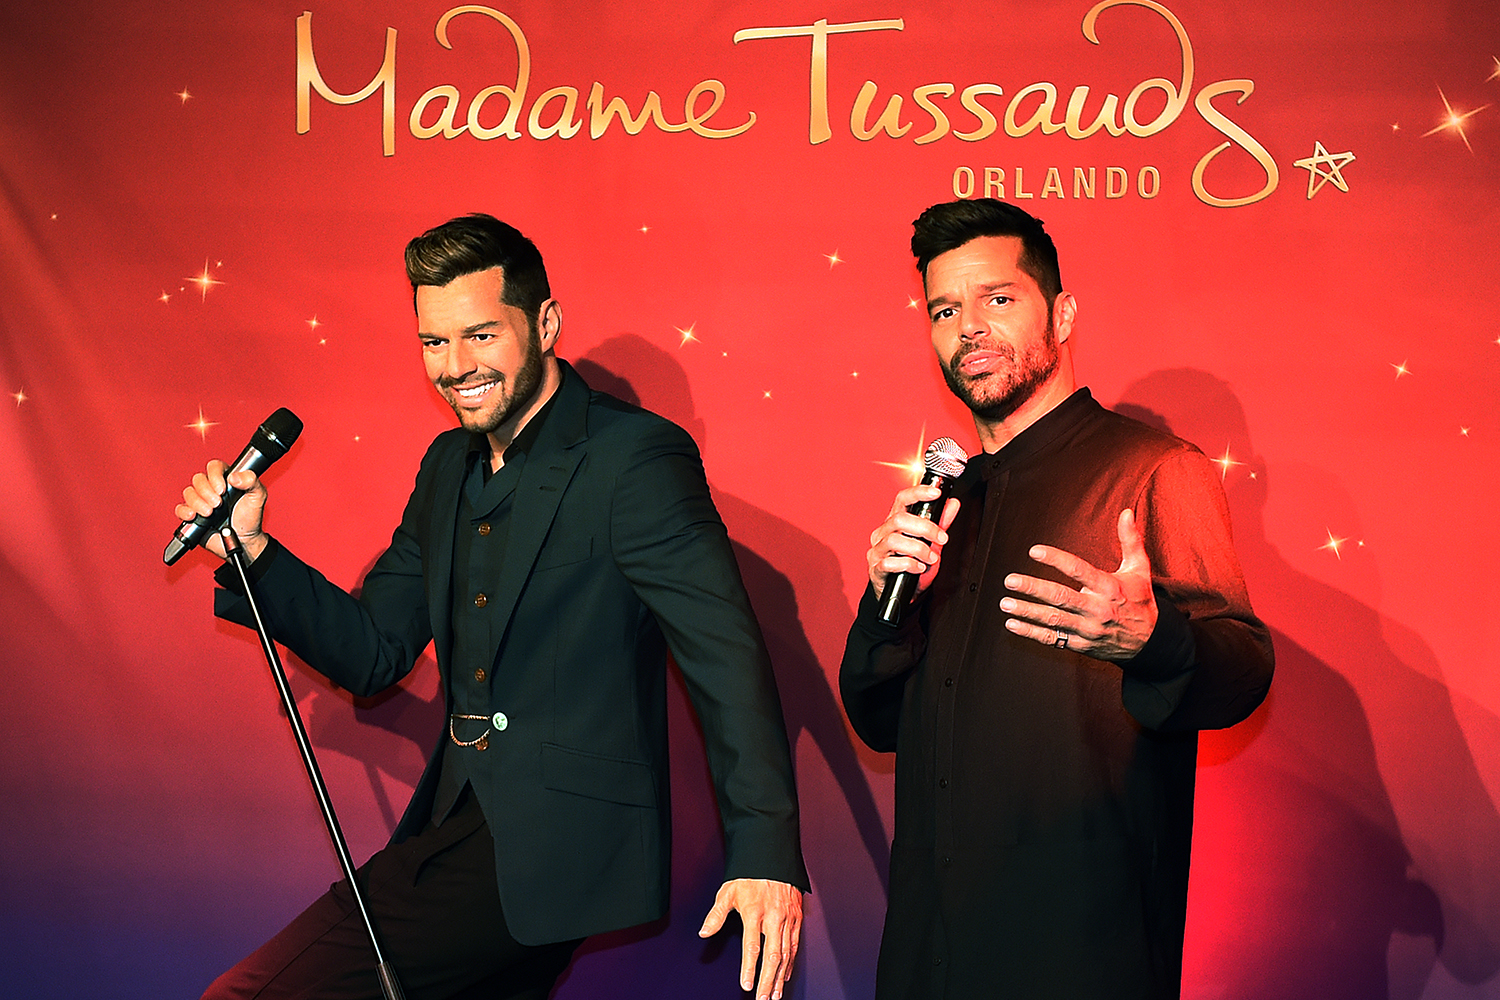 Ricky Martin ha develado una figura de cera hecha a su semejanza en Las Vegas